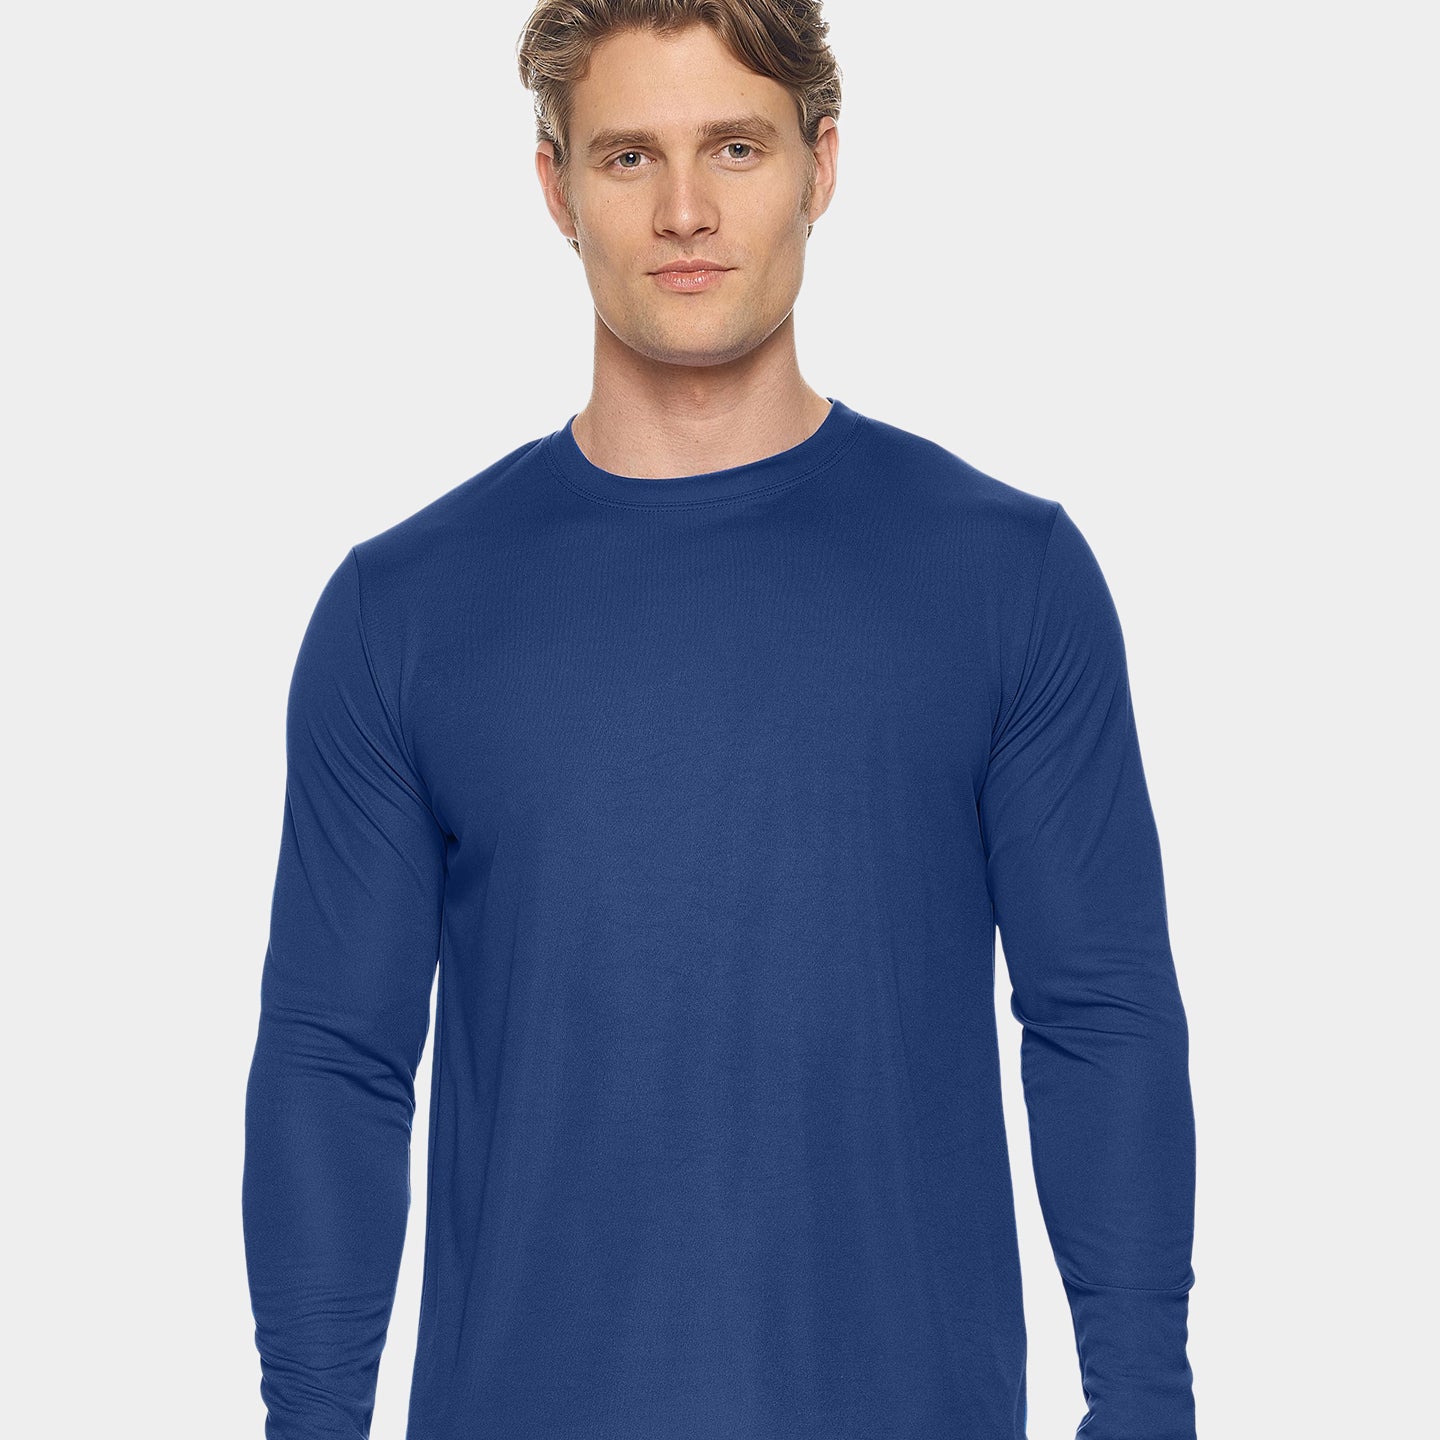 Expert Brand DriMax Men's Performance Long Sleeve Shirt, XXS, Navy A1